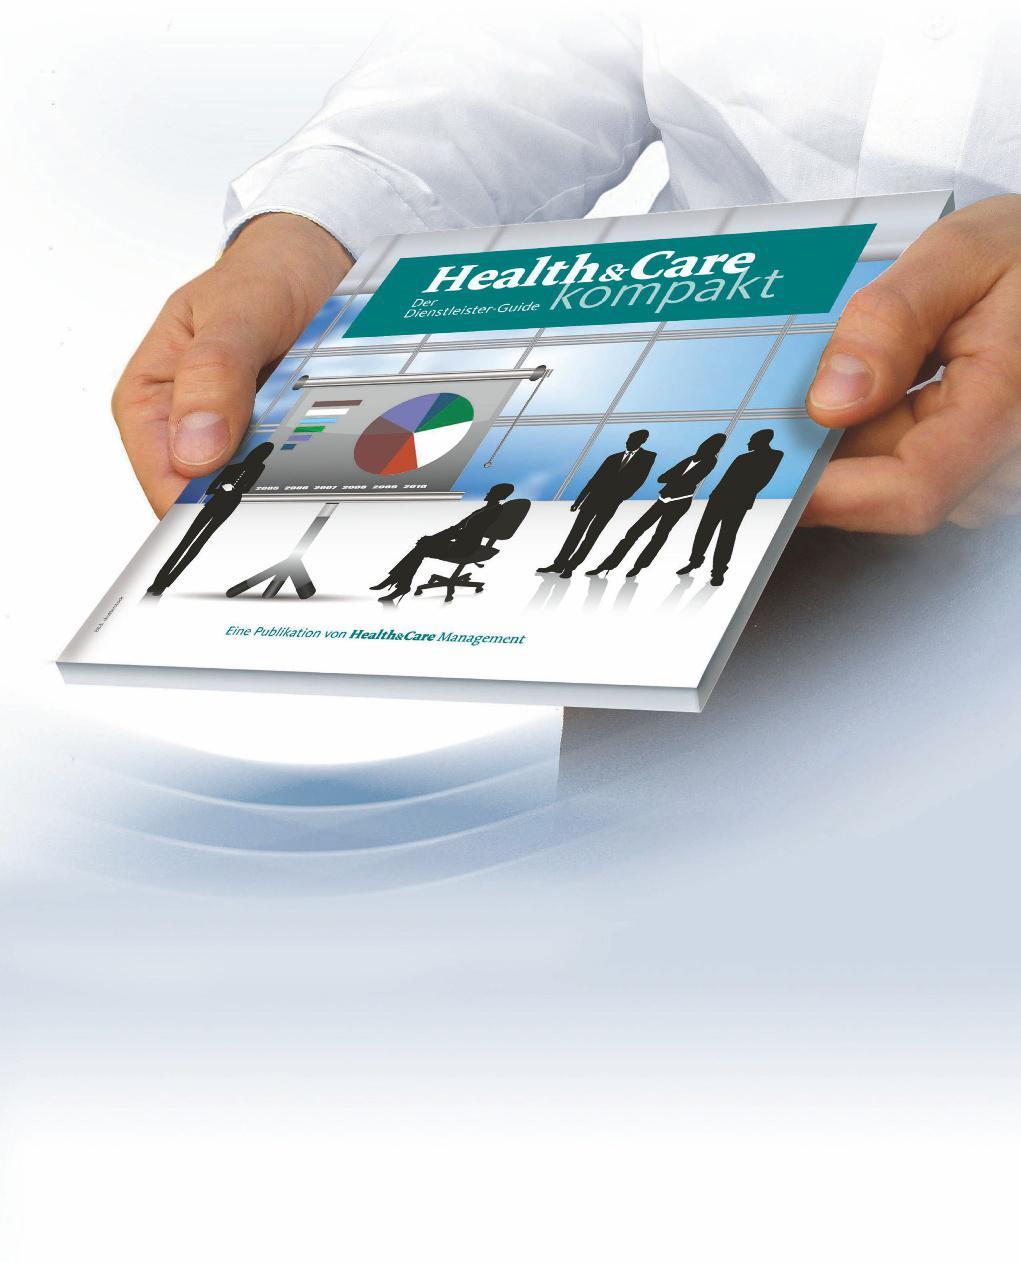 Health&Care kompakt Der Dienstleister-Guide IhrUnternehmen perfekt präsentiert